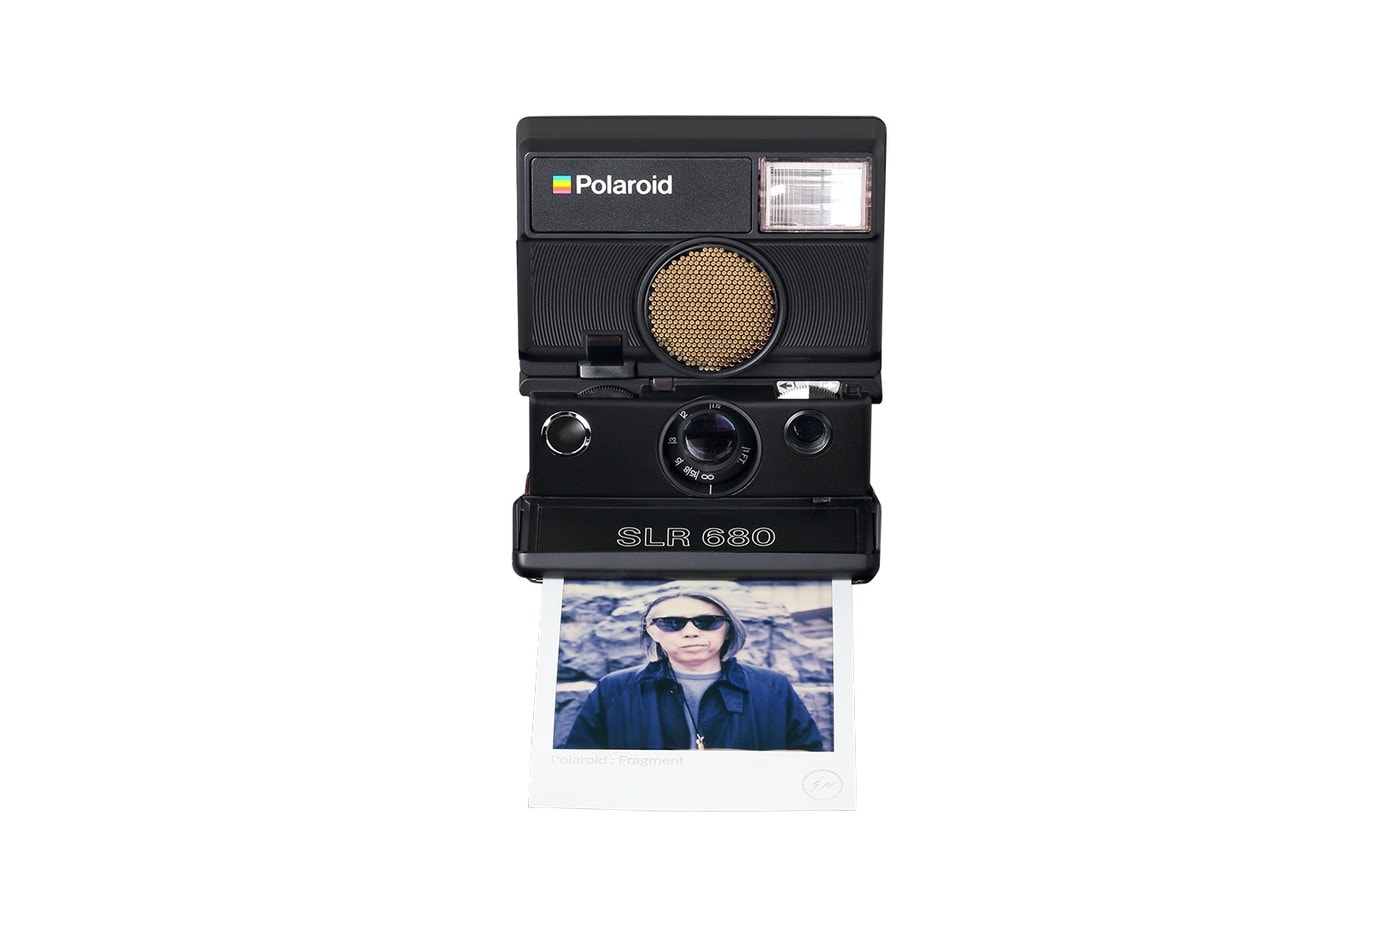 攝影也要潮 − fragment design x Polaroid 推出限量聯乘 SLR680 拍立得相機